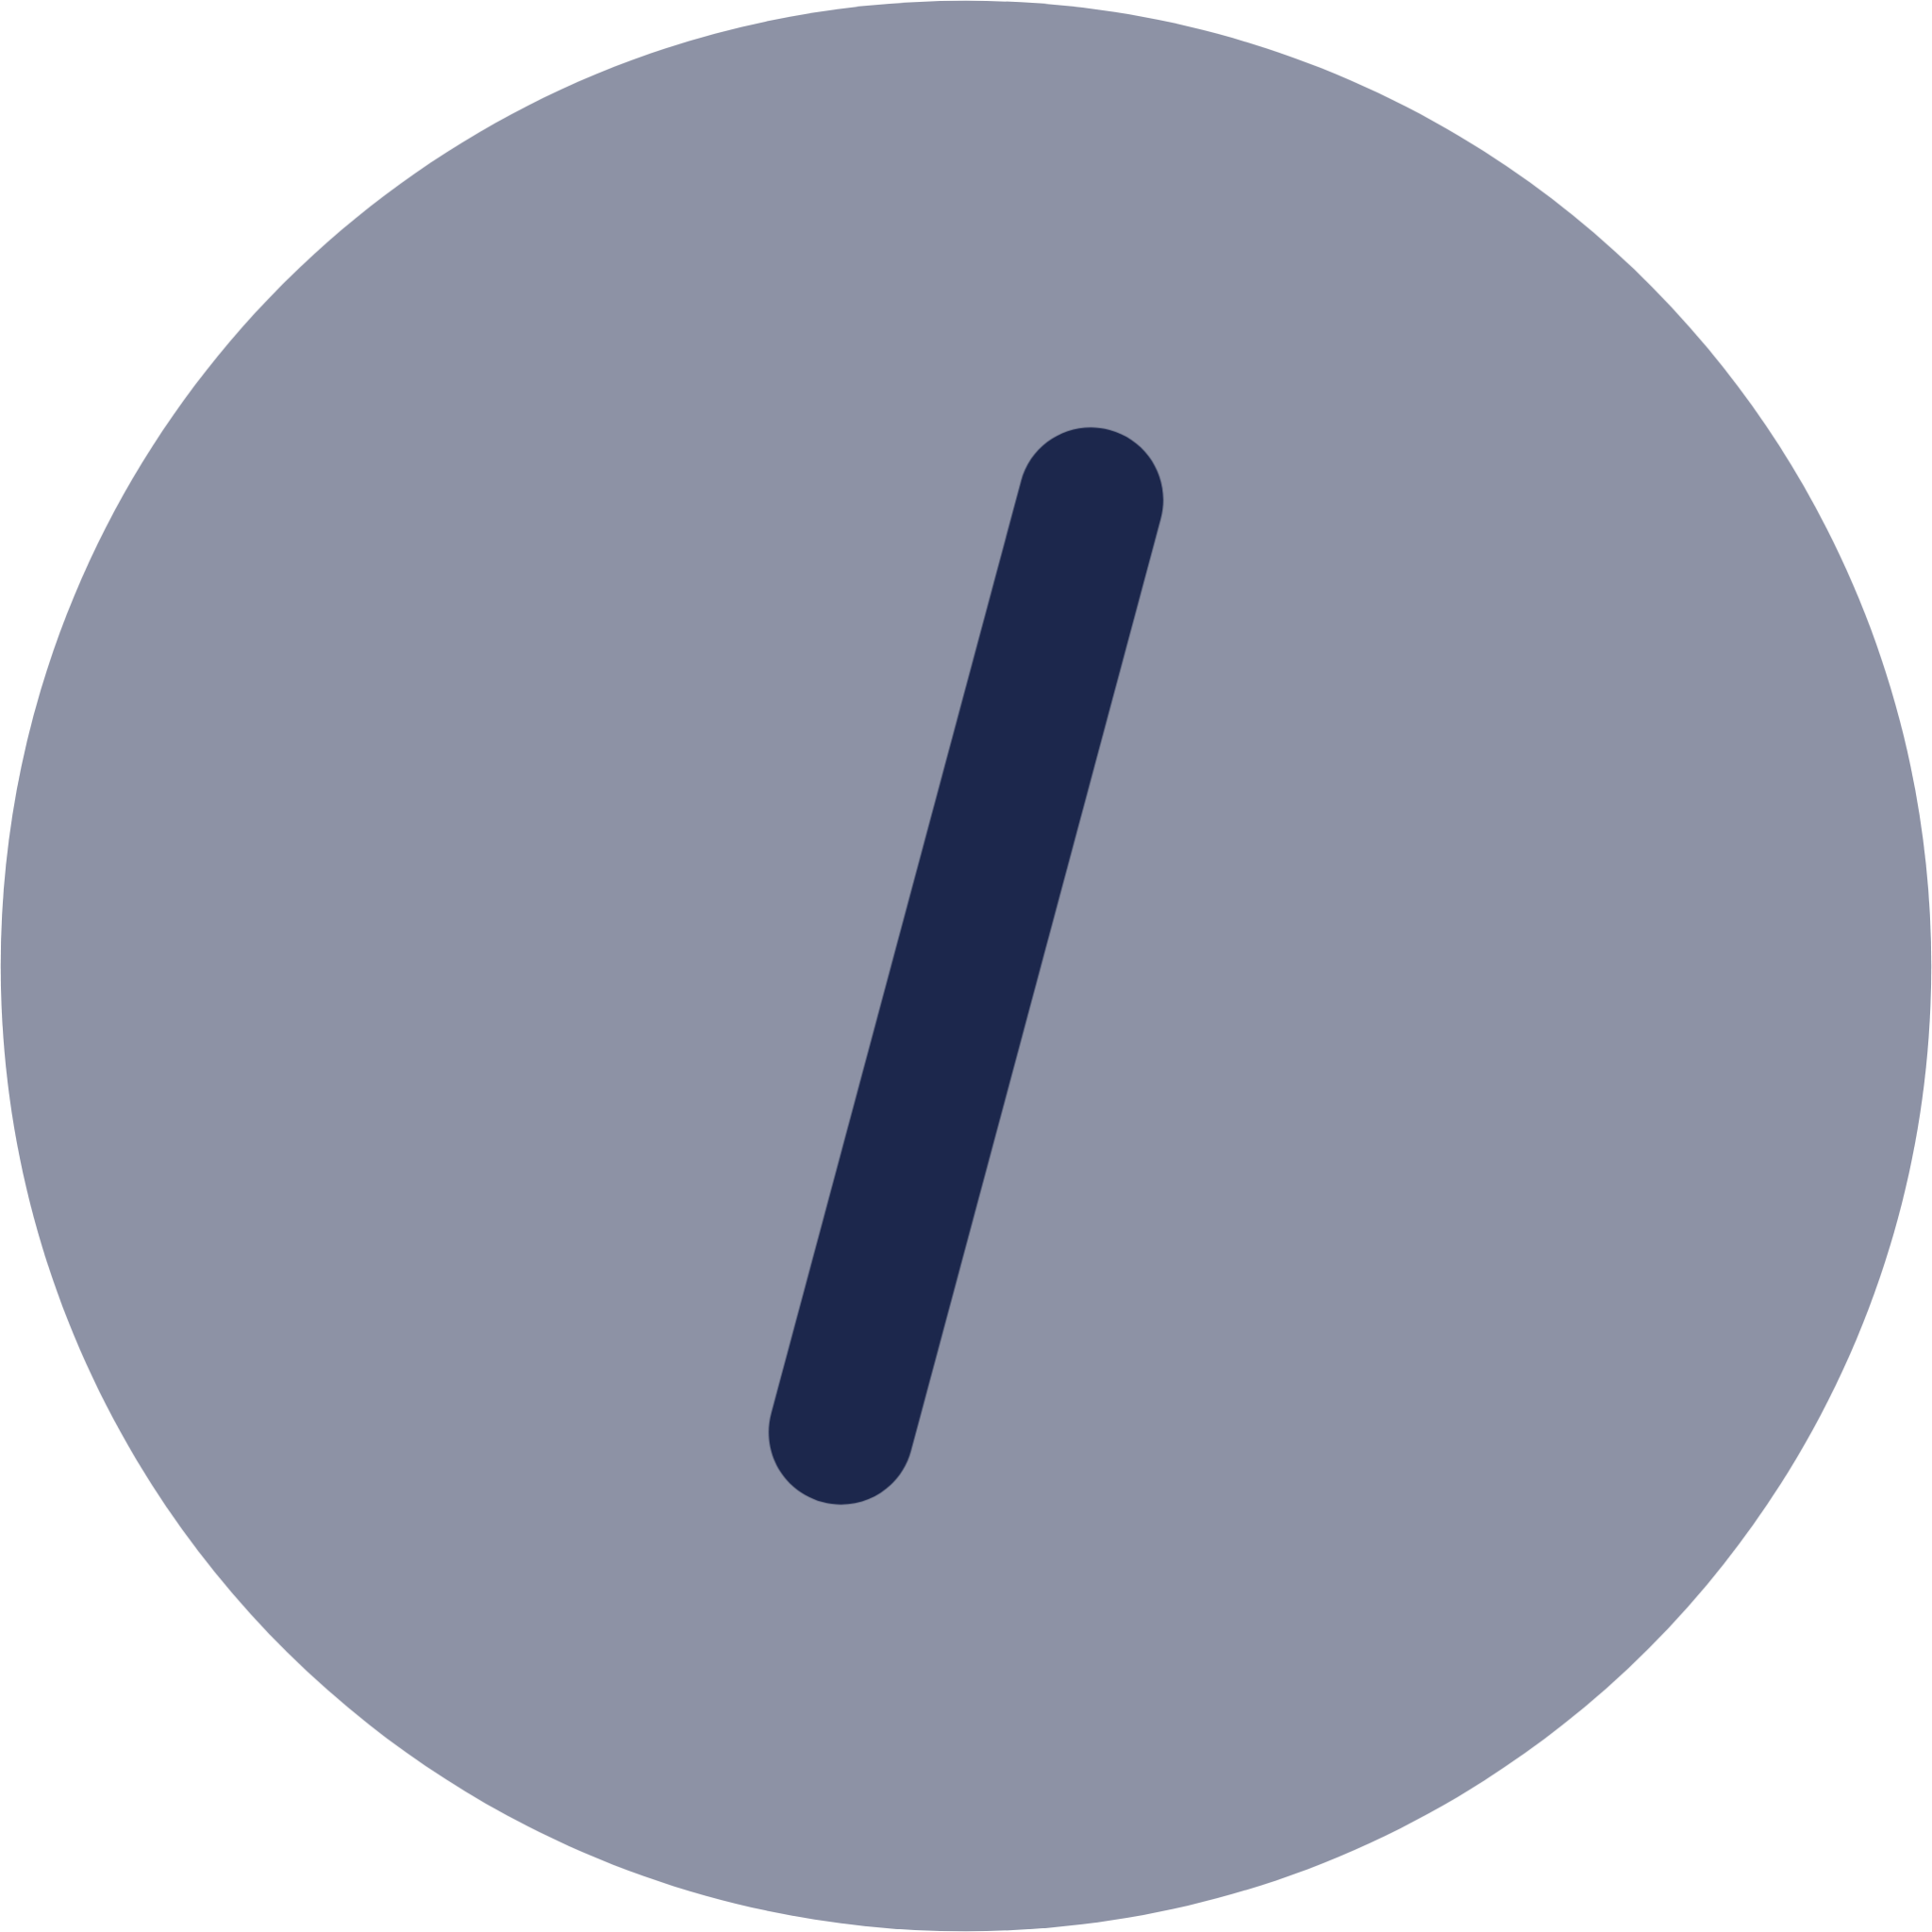 Slash Circle icon